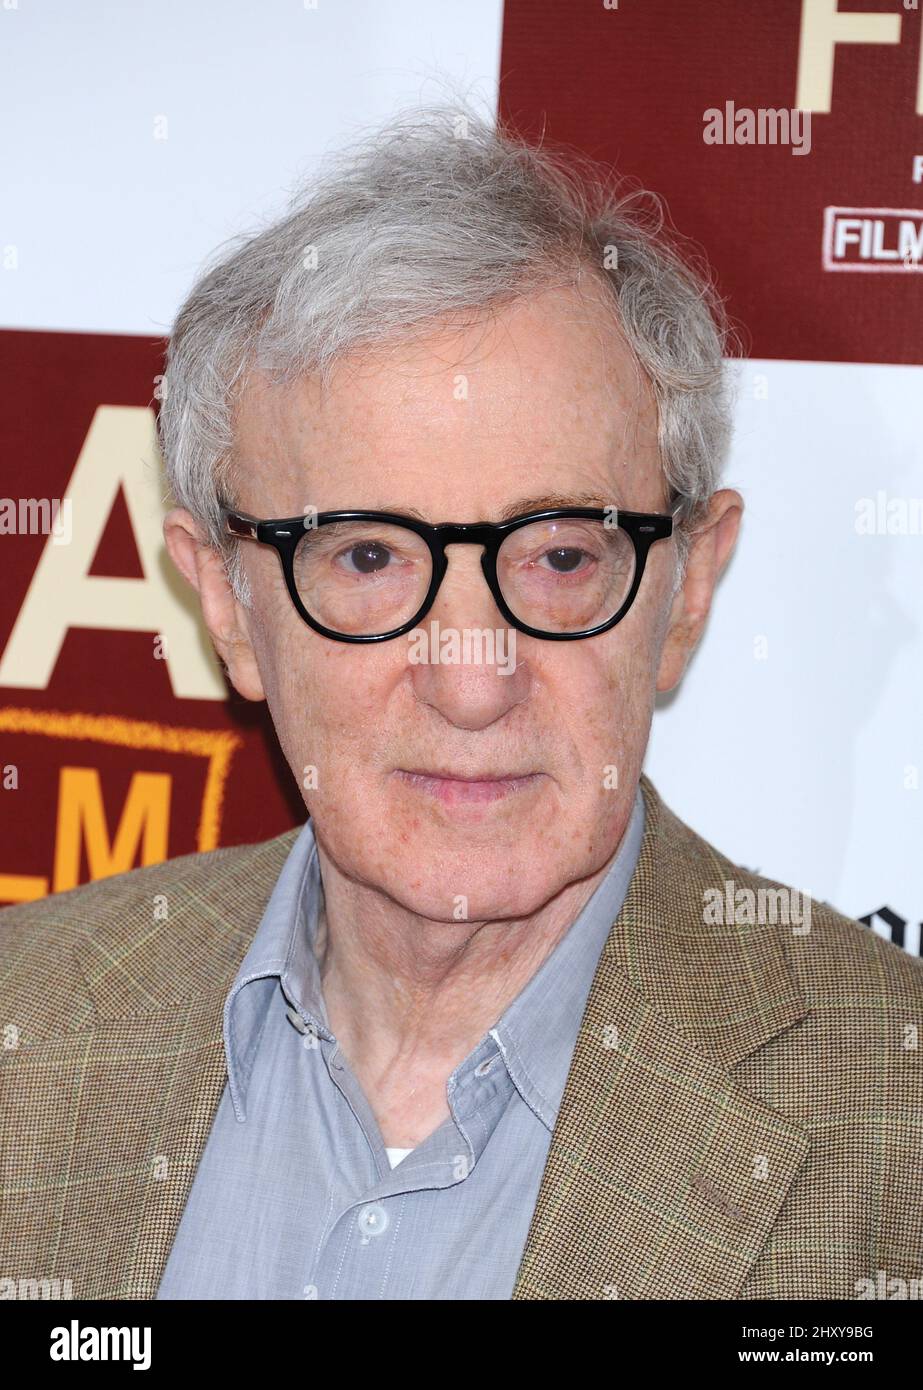 Woody Allen partecipa alla proiezione notturna "To Rome with Love" al Los Angeles Film Festival 2012 che si tiene al Regal Cinemas L.A. LIVE, Los Angeles, California il 14 giugno 2012. Foto Stock